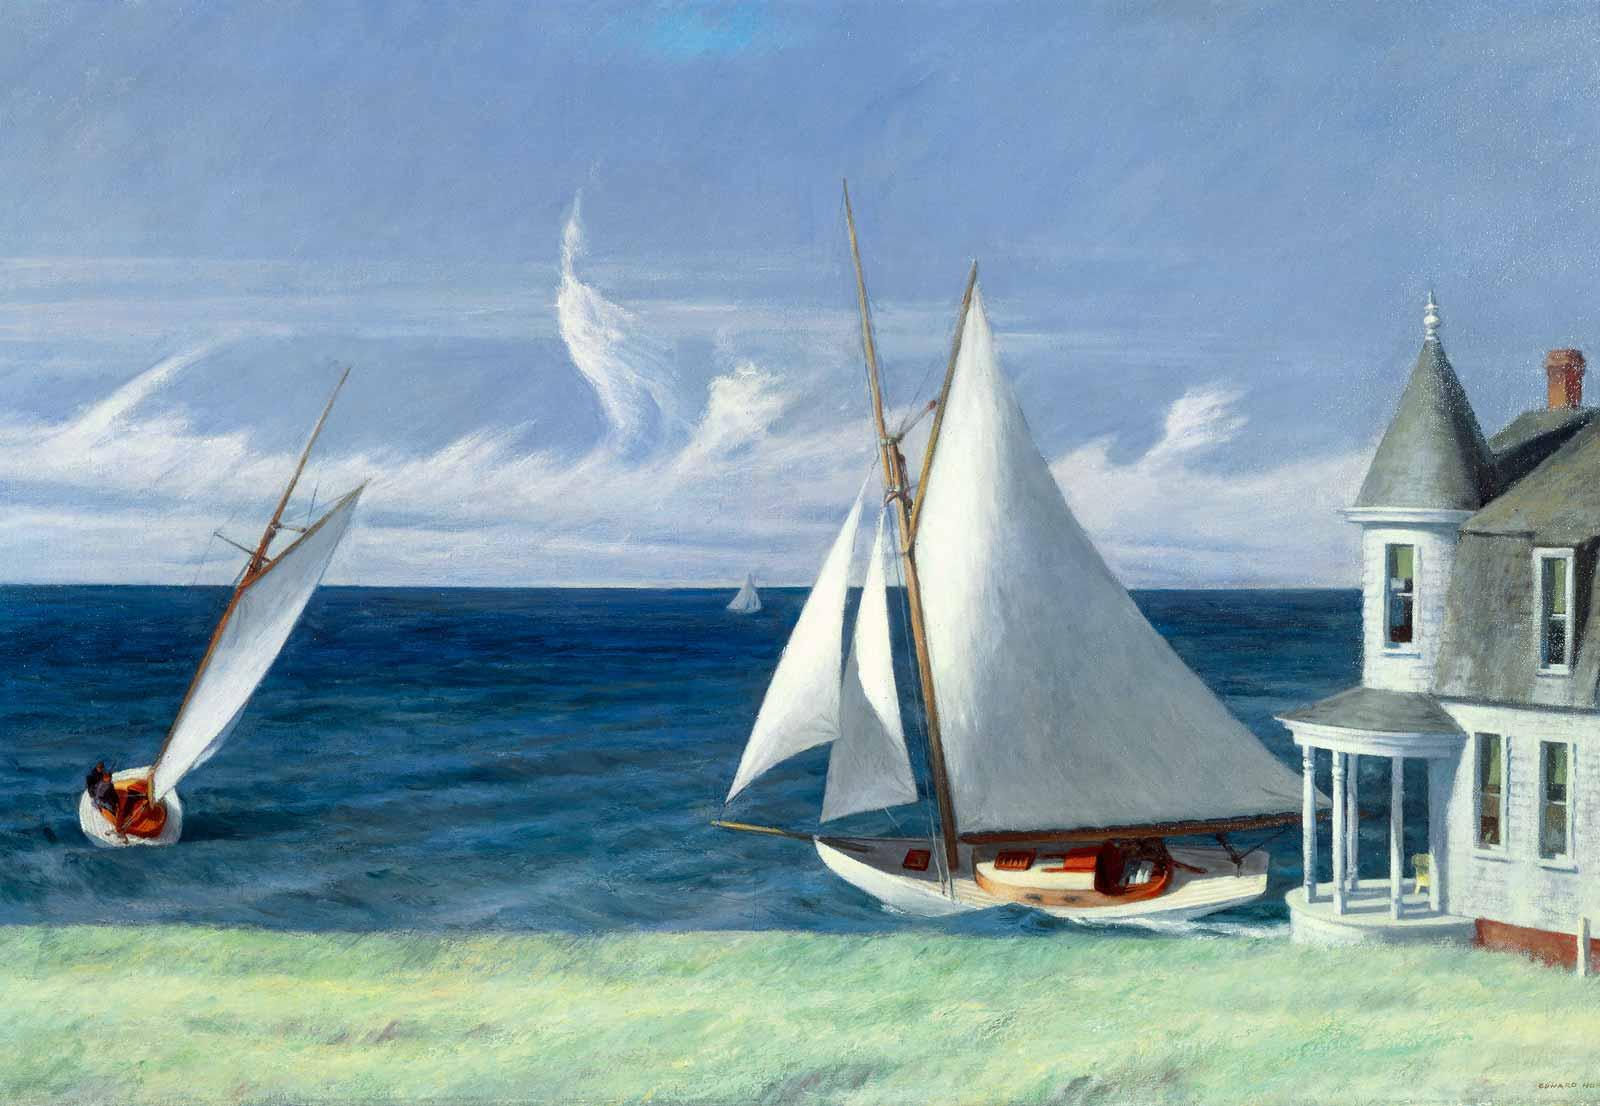 Edward Hopper, Lee Shore, 1941.